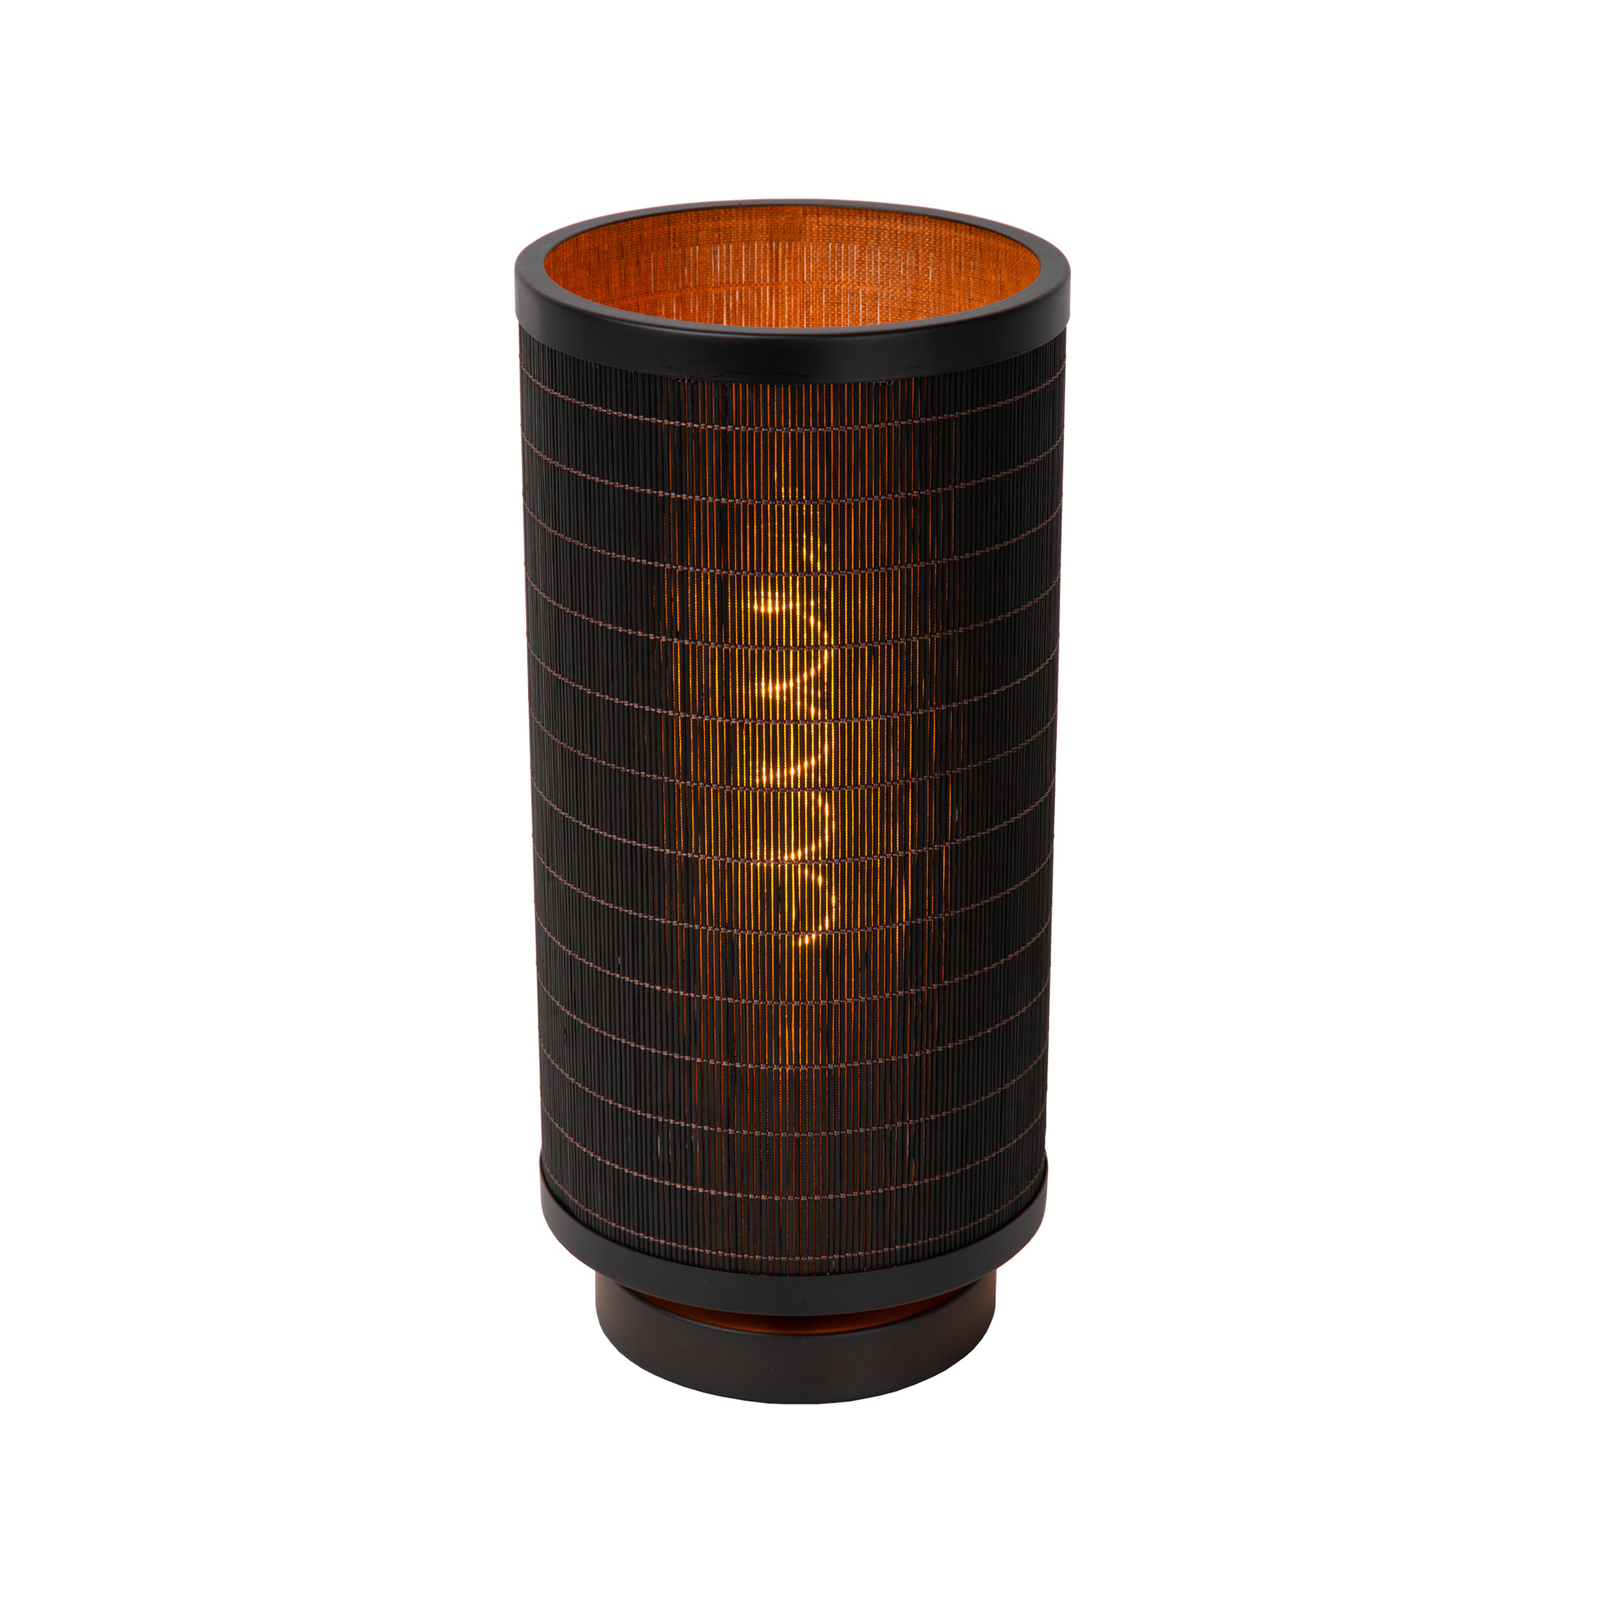 Tafellamp Tagalog van bamboe, zwart